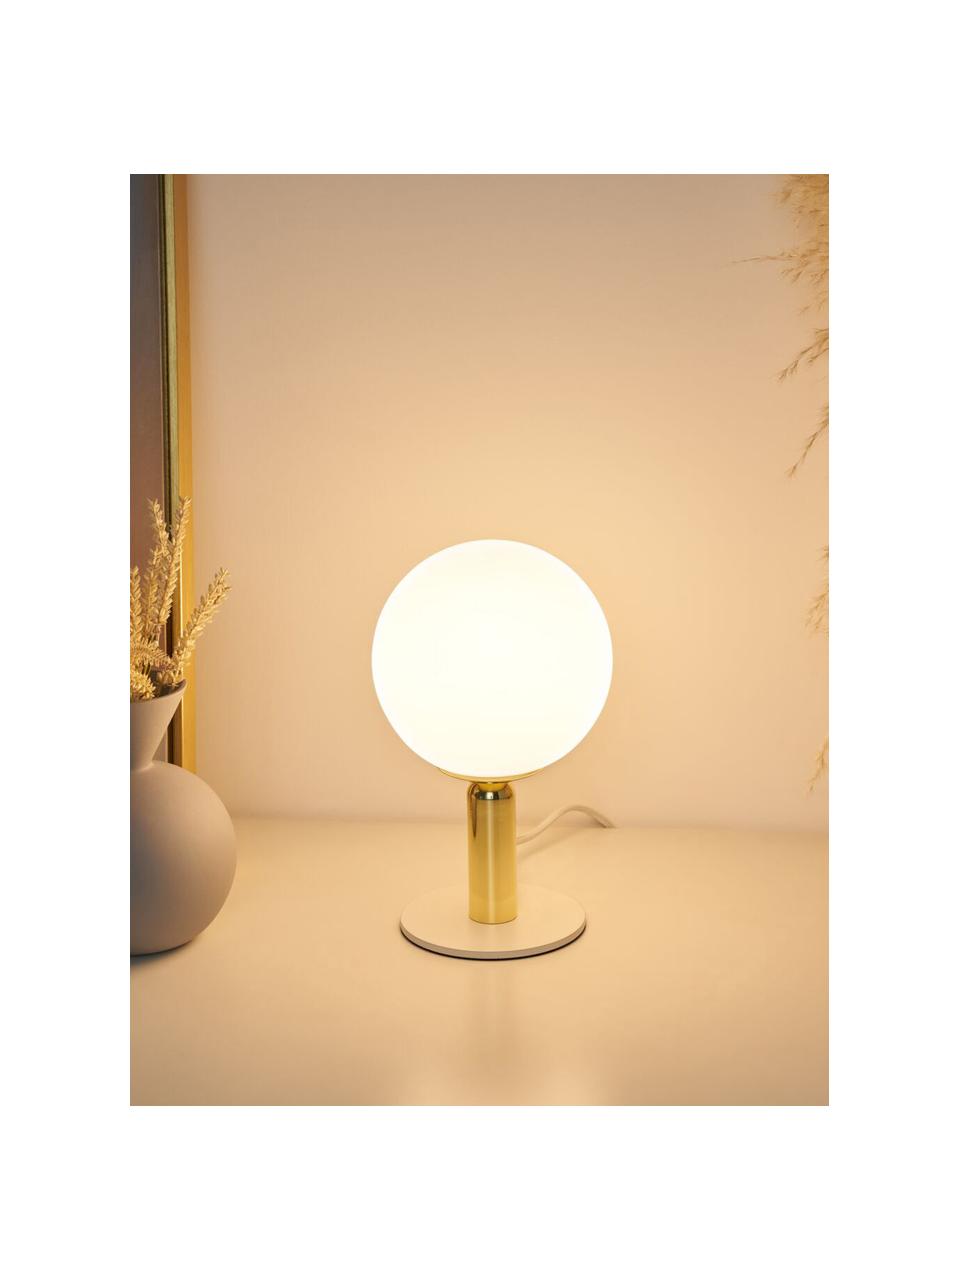 Kleine Tischlampe Splendid Pearl, Lampenschirm: Glas, Gestell: Metall, beschichtet, Lampenfuß: Metall, beschichtet, Weiß, Goldfarben, Ø 15 x H 26 cm